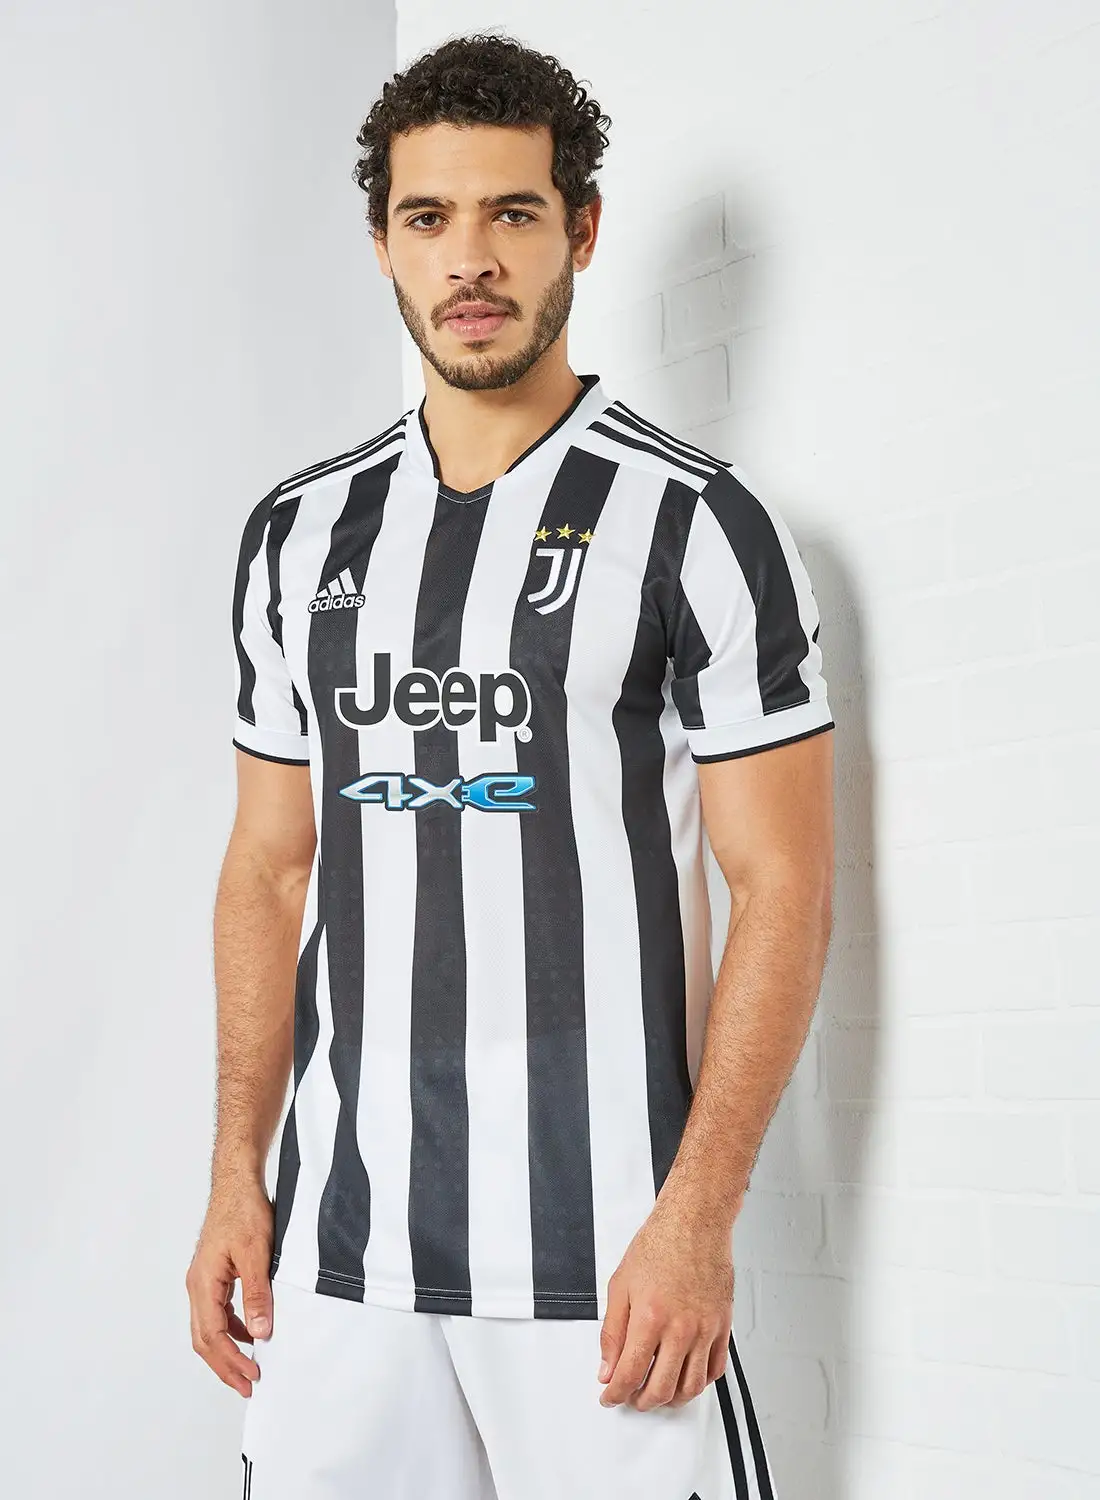 Adidas Juventus 21/22 Home Football Jersey White/Black